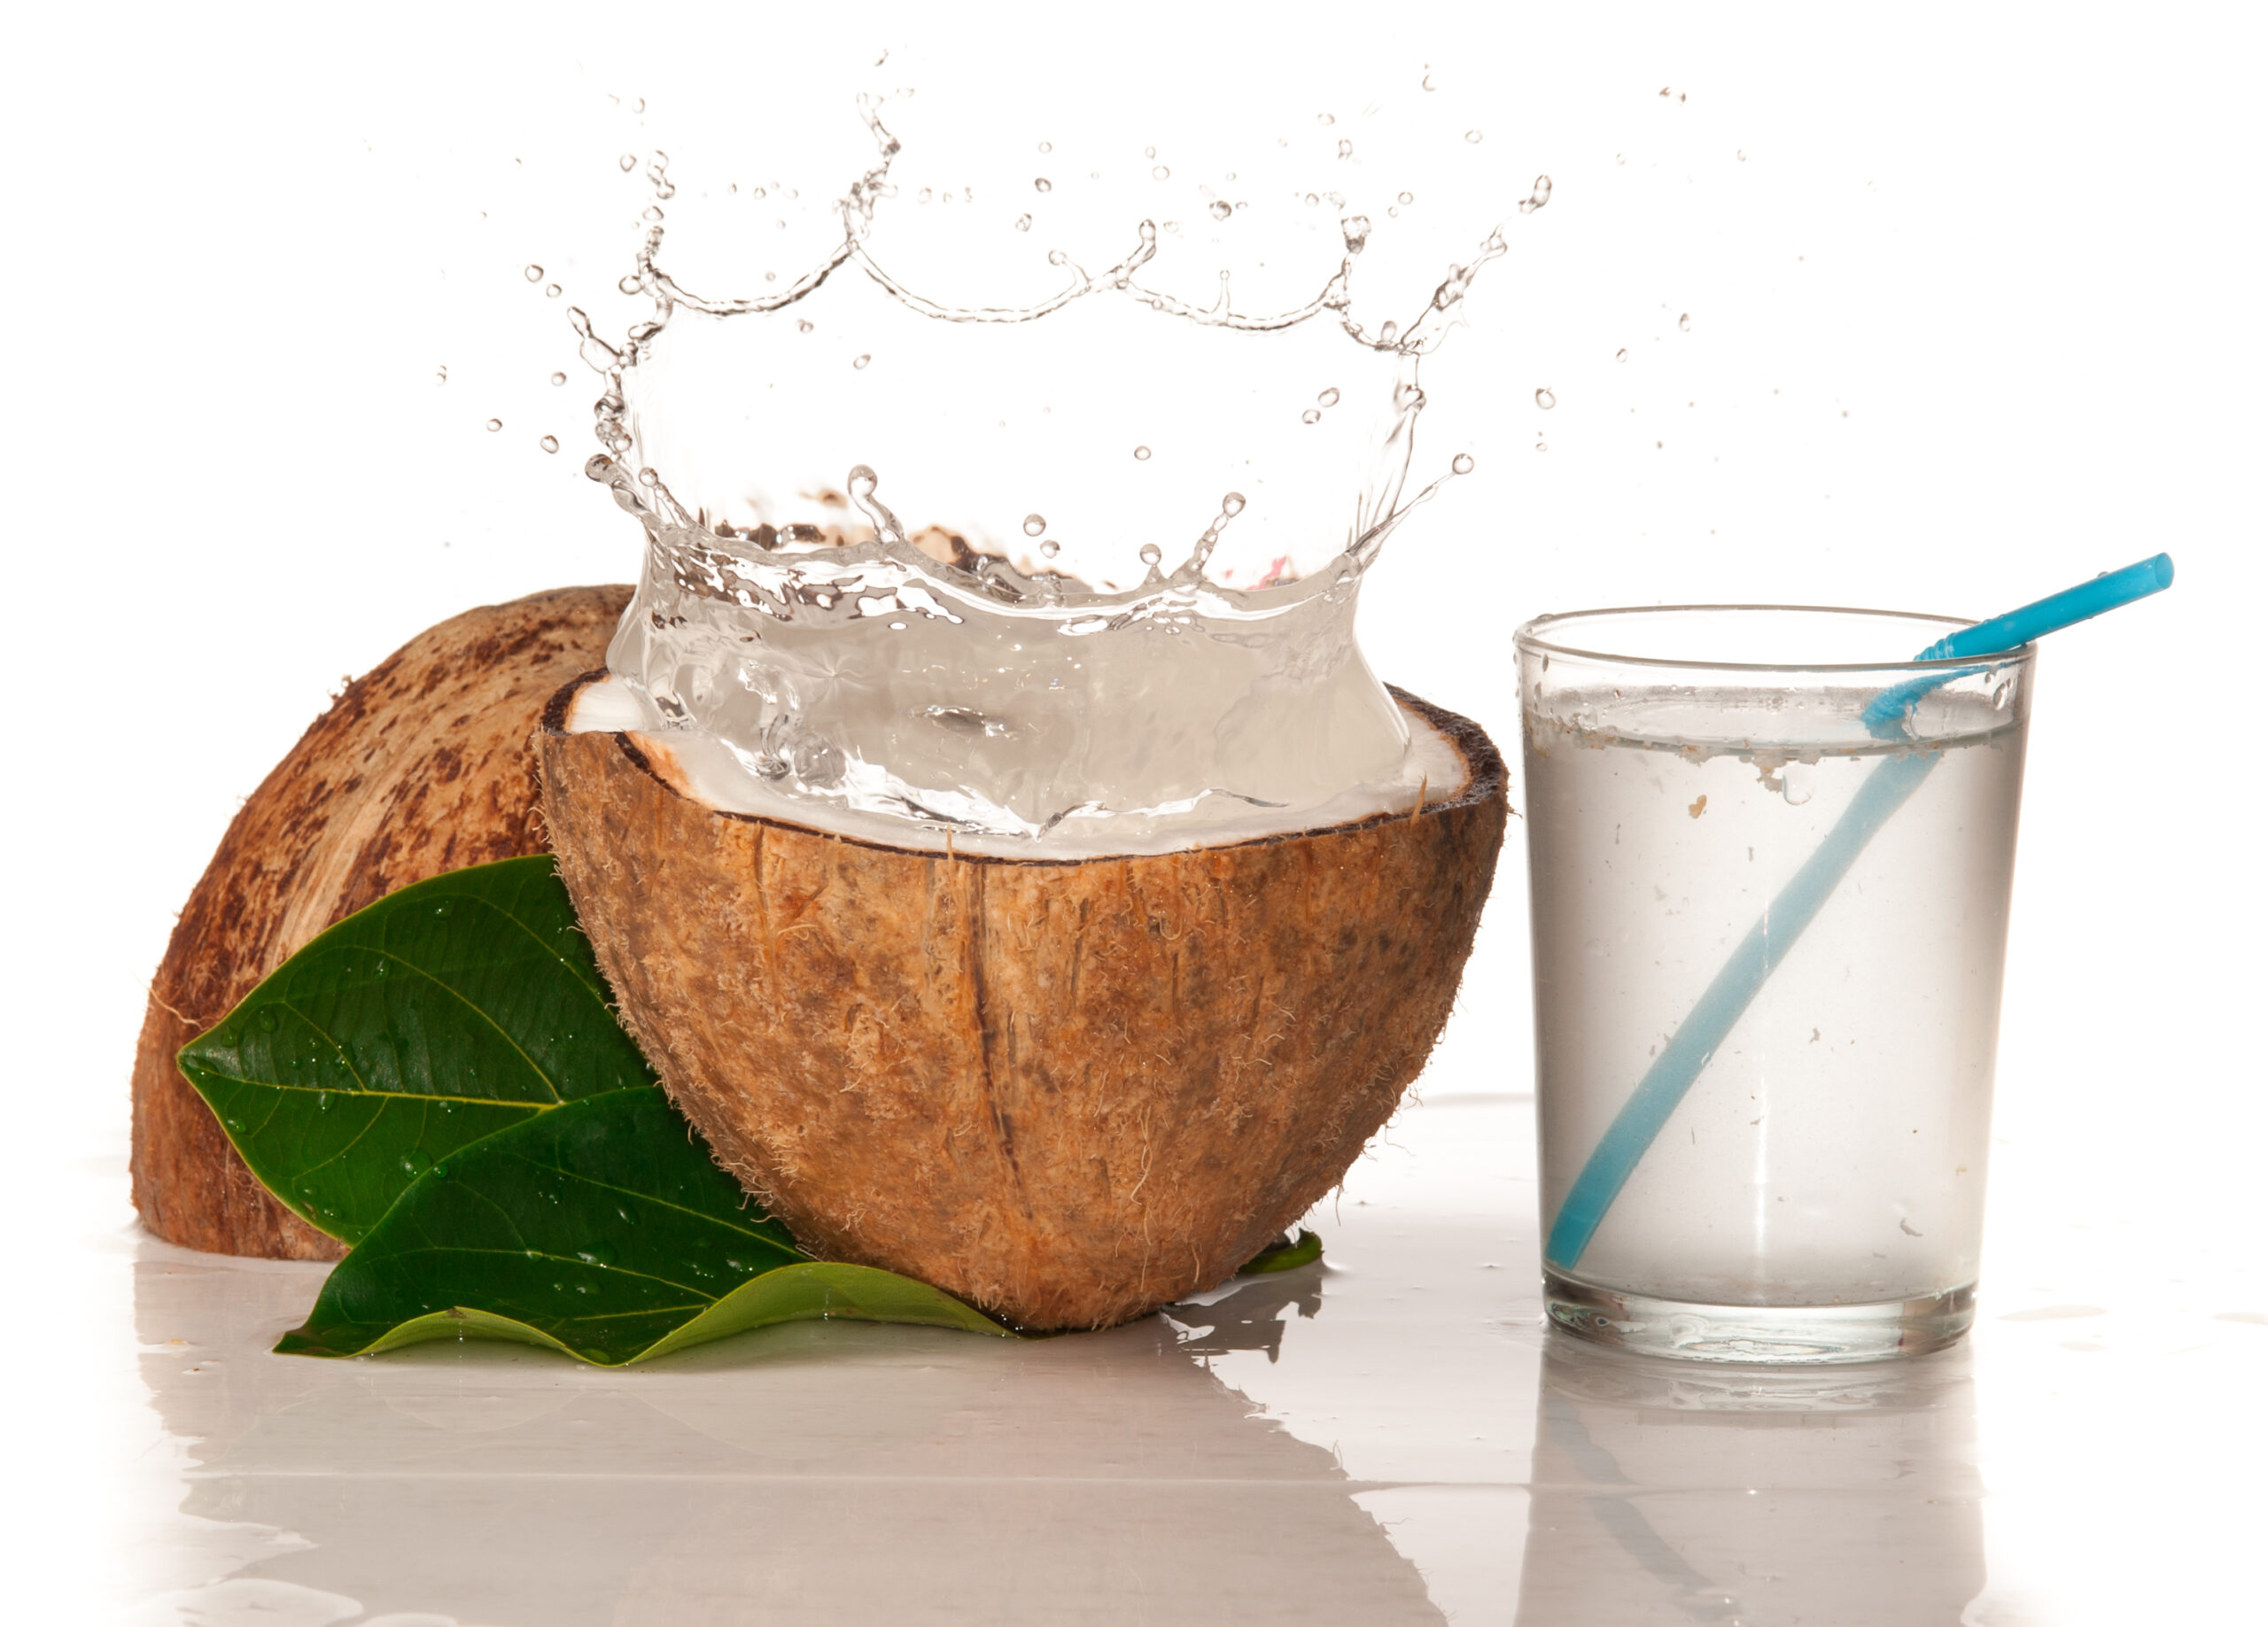 Nước dừa là chất lỏng, trong, chứa trong quả dừa